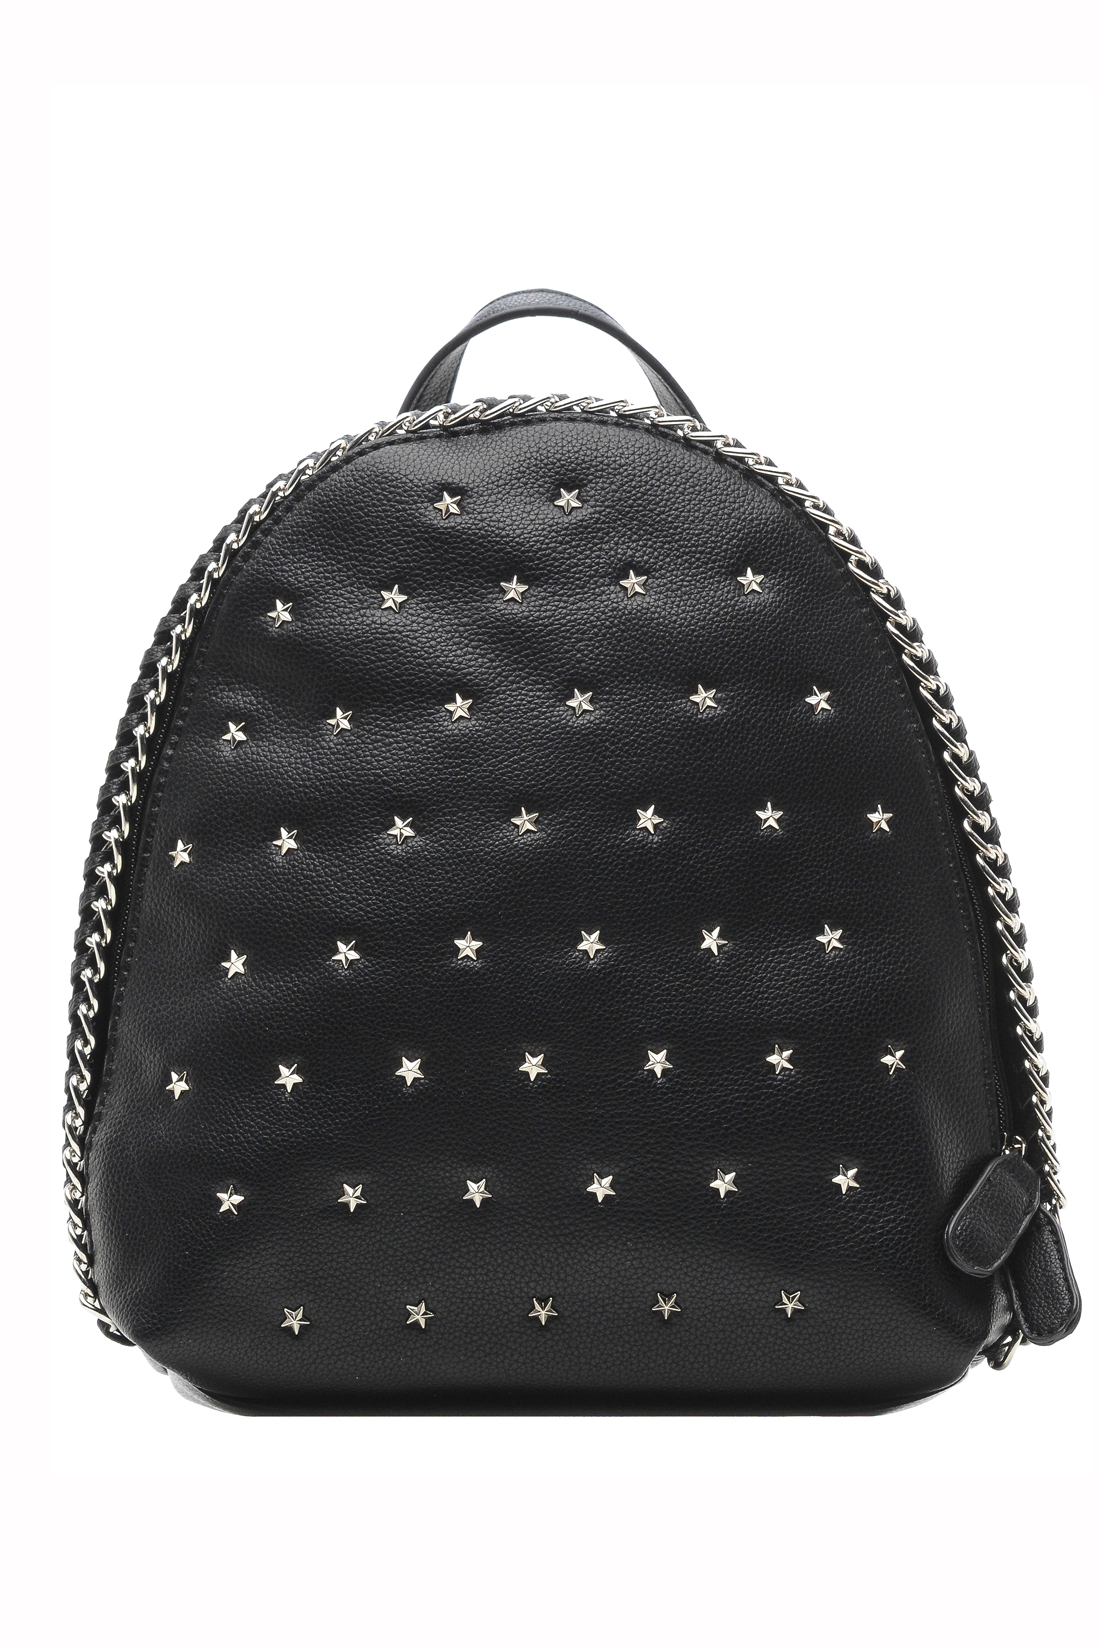 Рюкзак с металлической отделкой (арт. baon B379004), размер Без/раз, цвет черный Рюкзак с металлической отделкой (арт. baon B379004) - фото 1